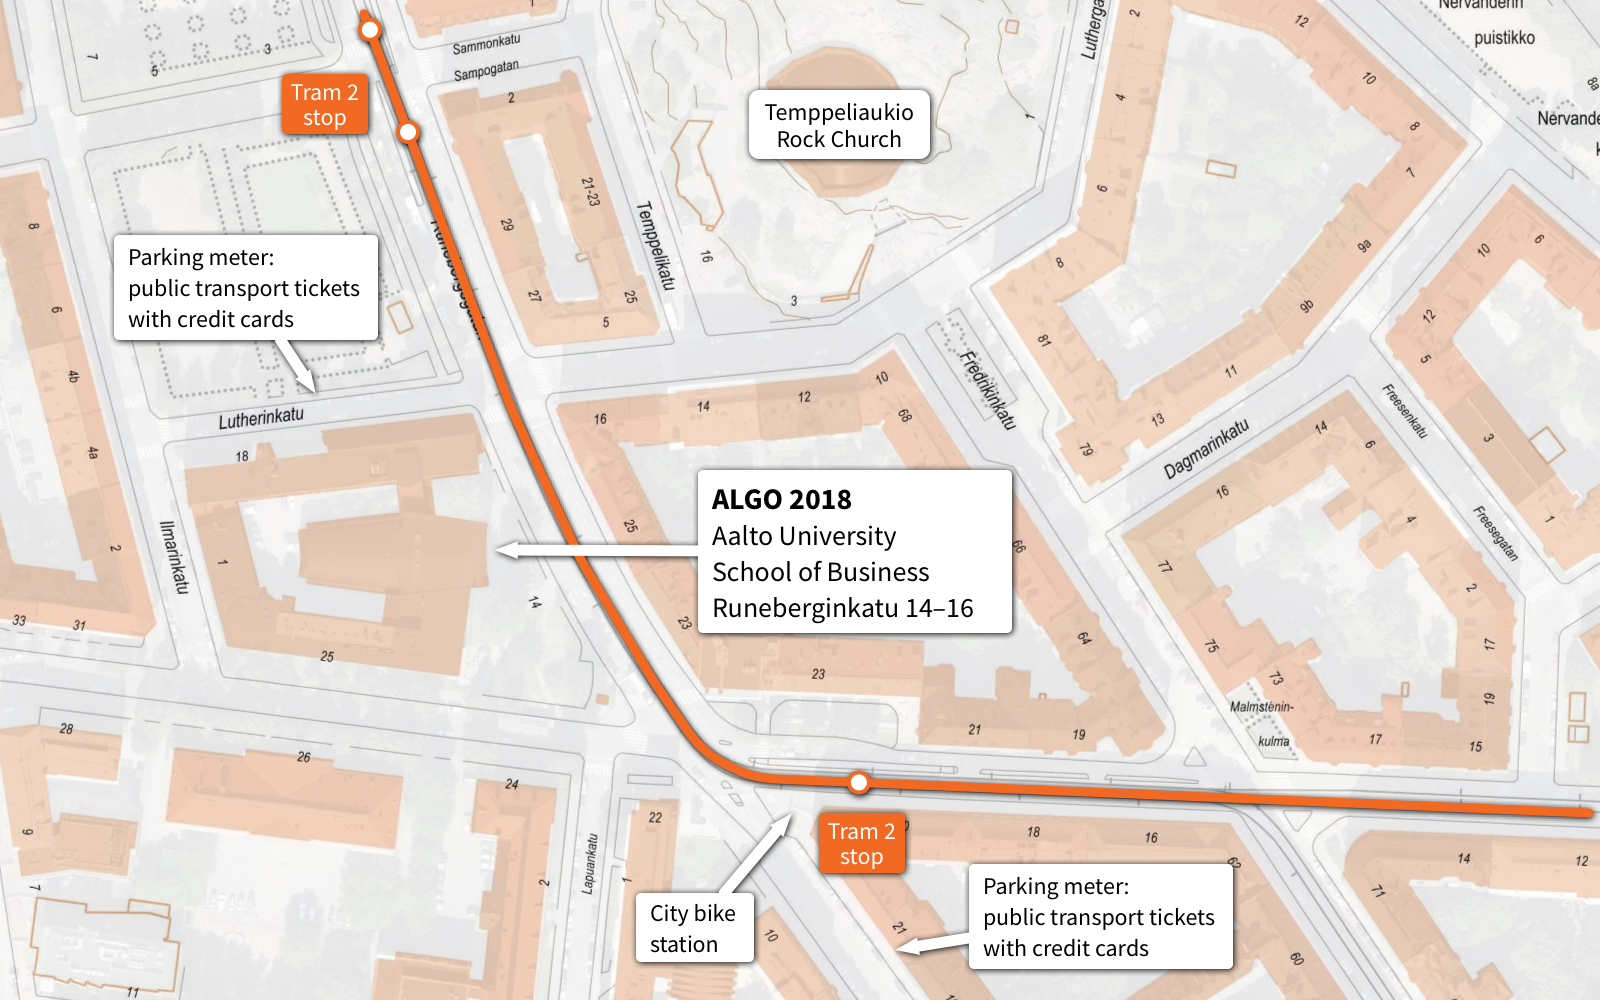 Map of ALGO 2018 venue and neighborhood